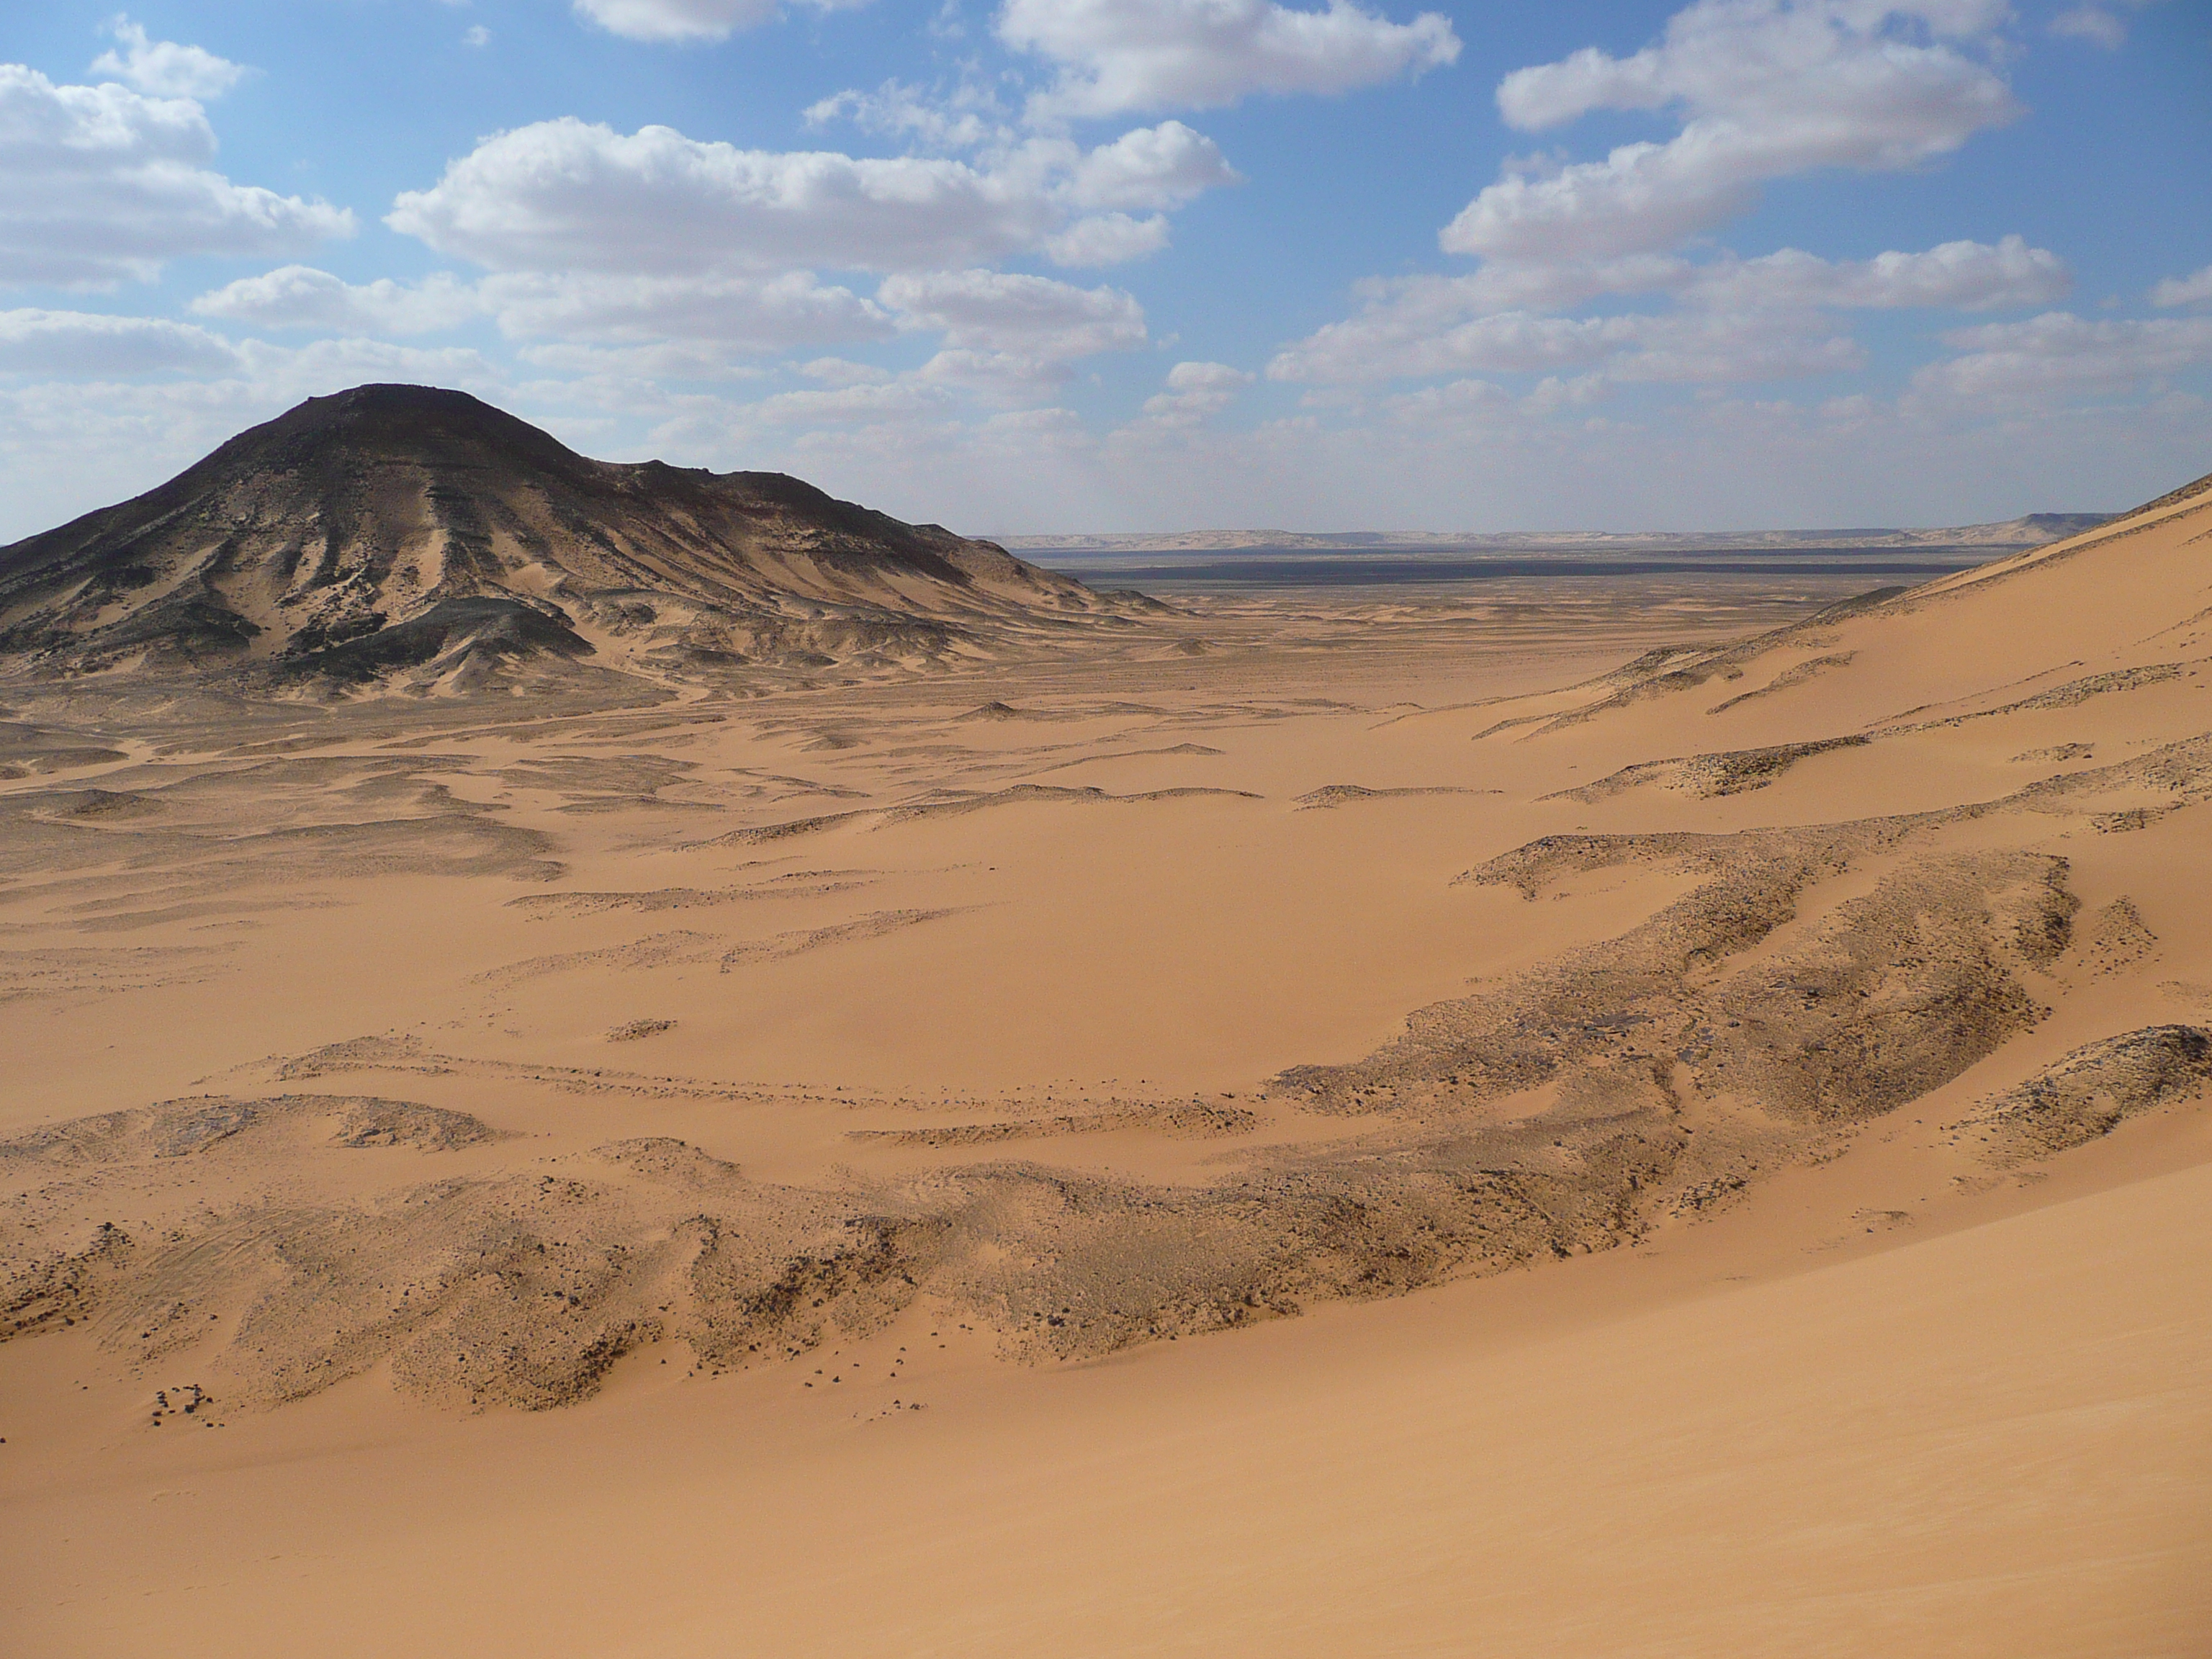 Impressions of Egypt's Desert - The Inside Track